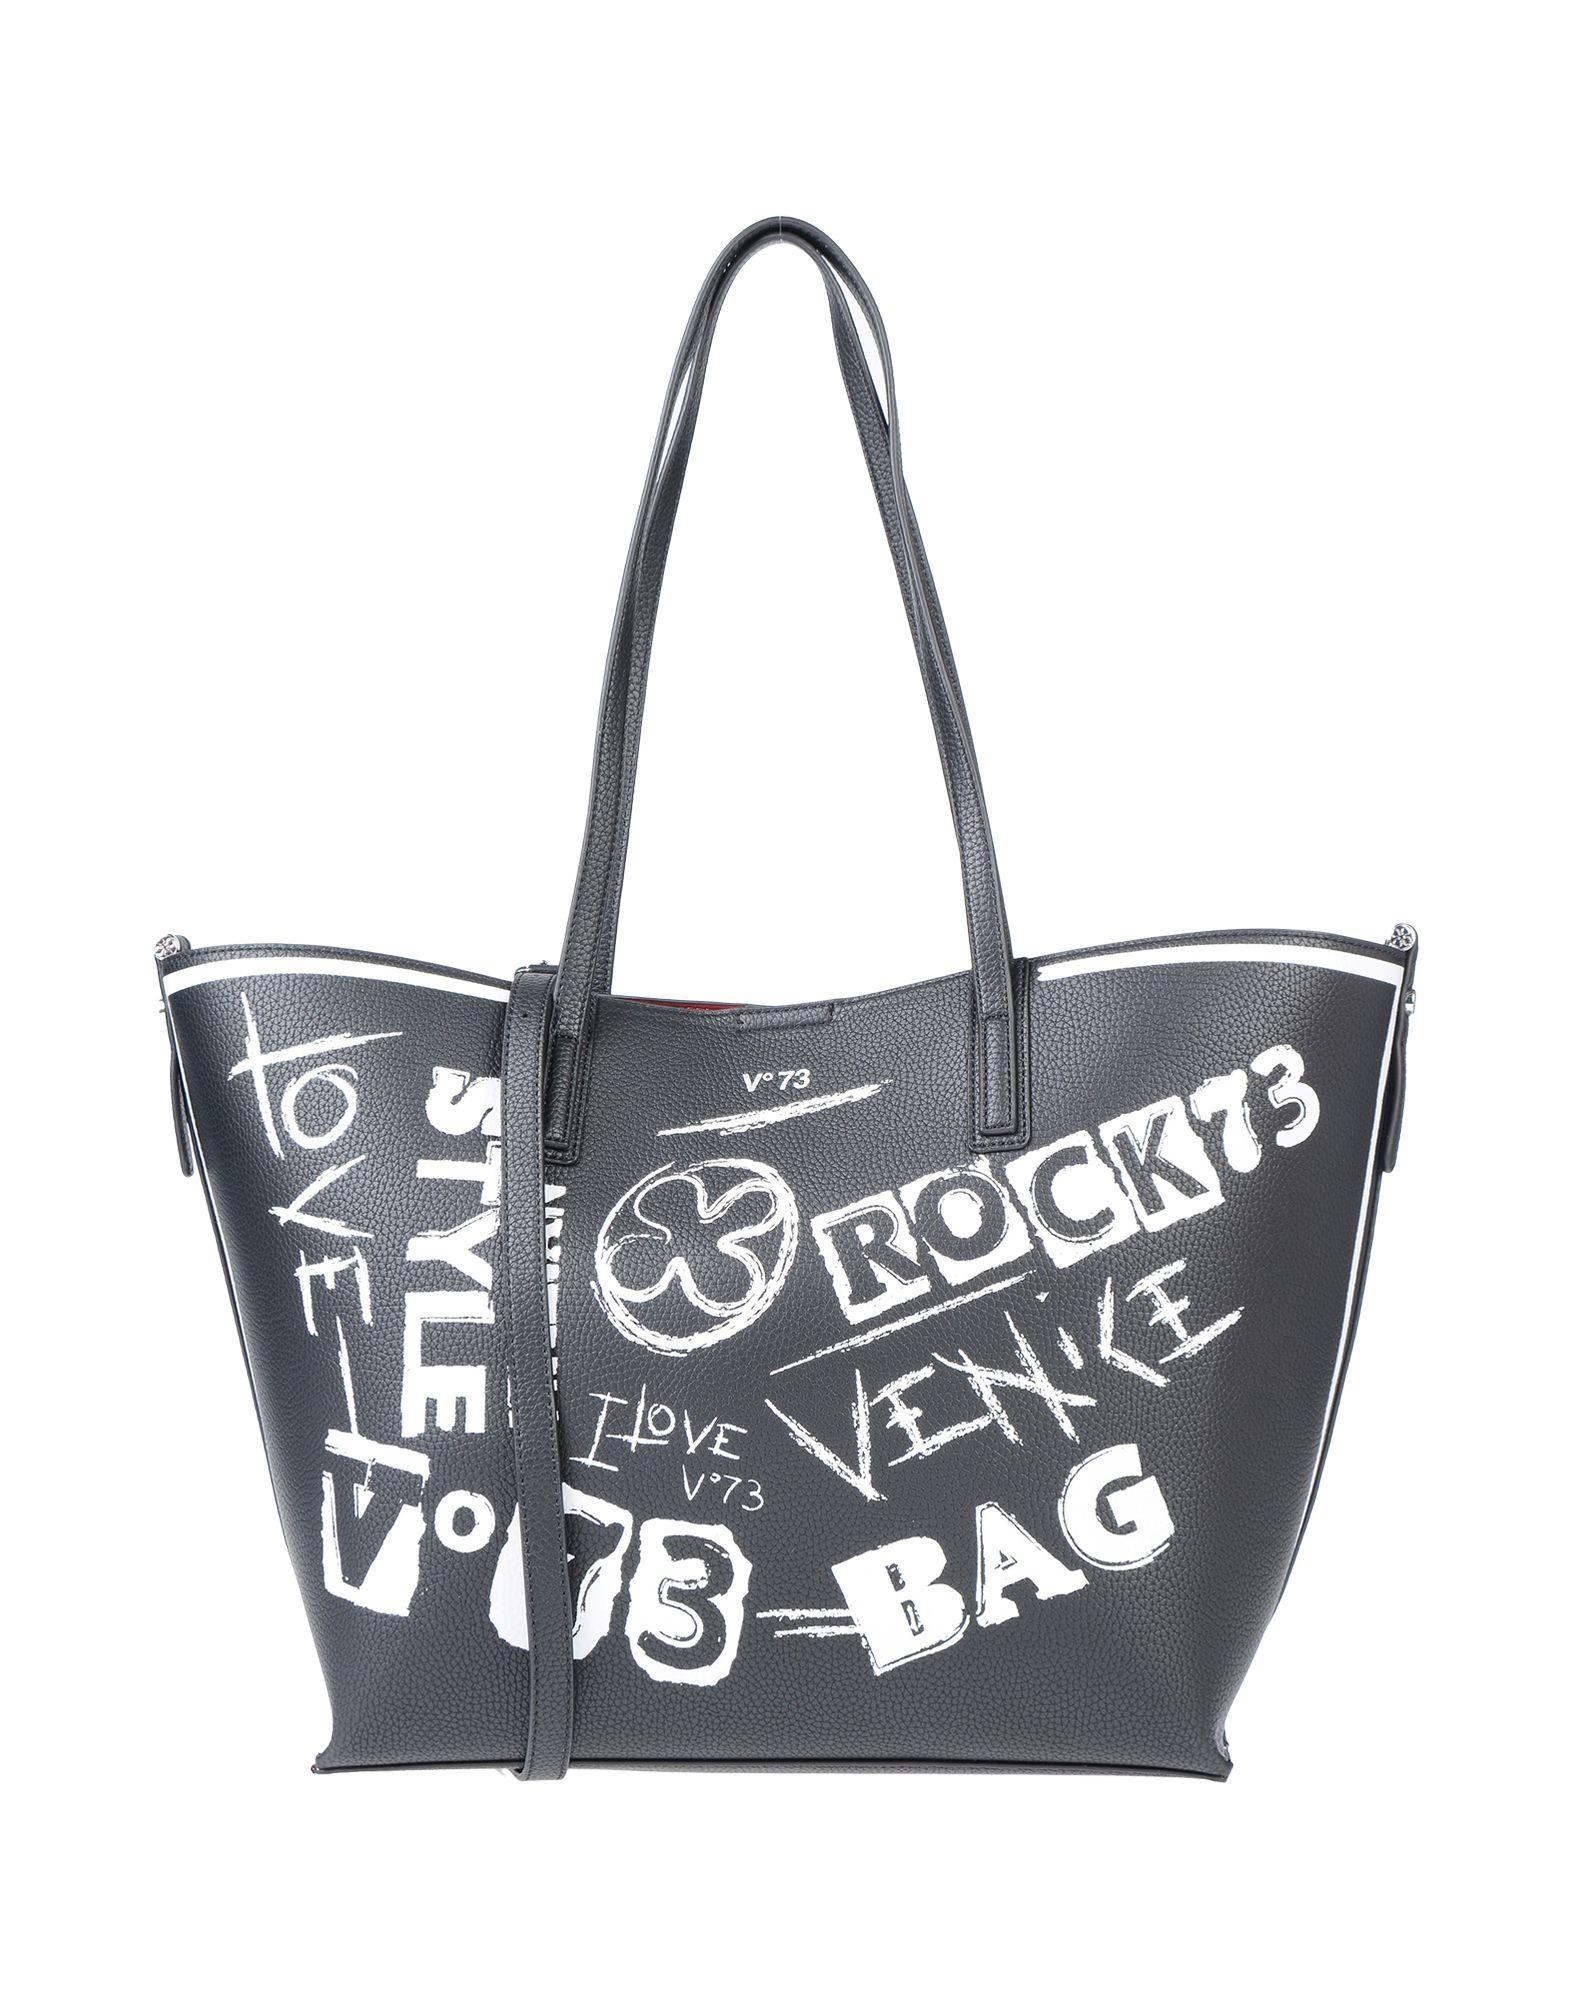 V73 Shoulder Bag in Black - Lyst